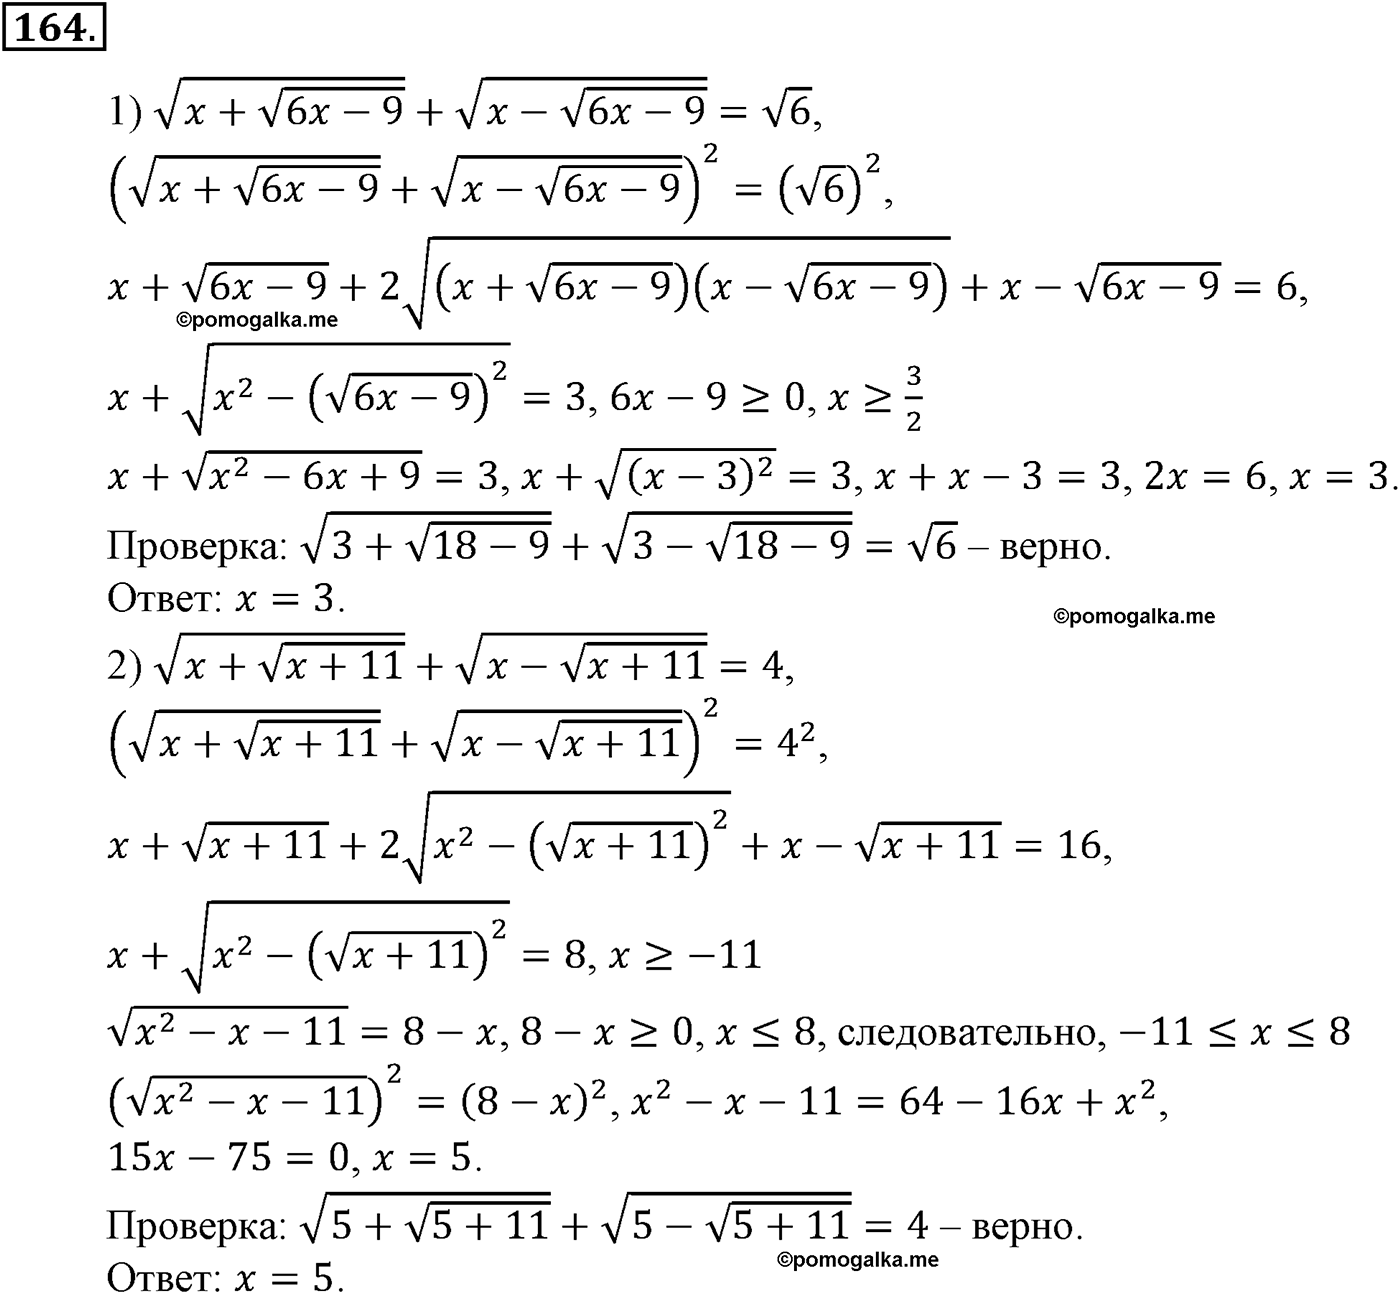 разбор задачи №164 по алгебре за 10-11 класс из учебника Алимова, Колягина